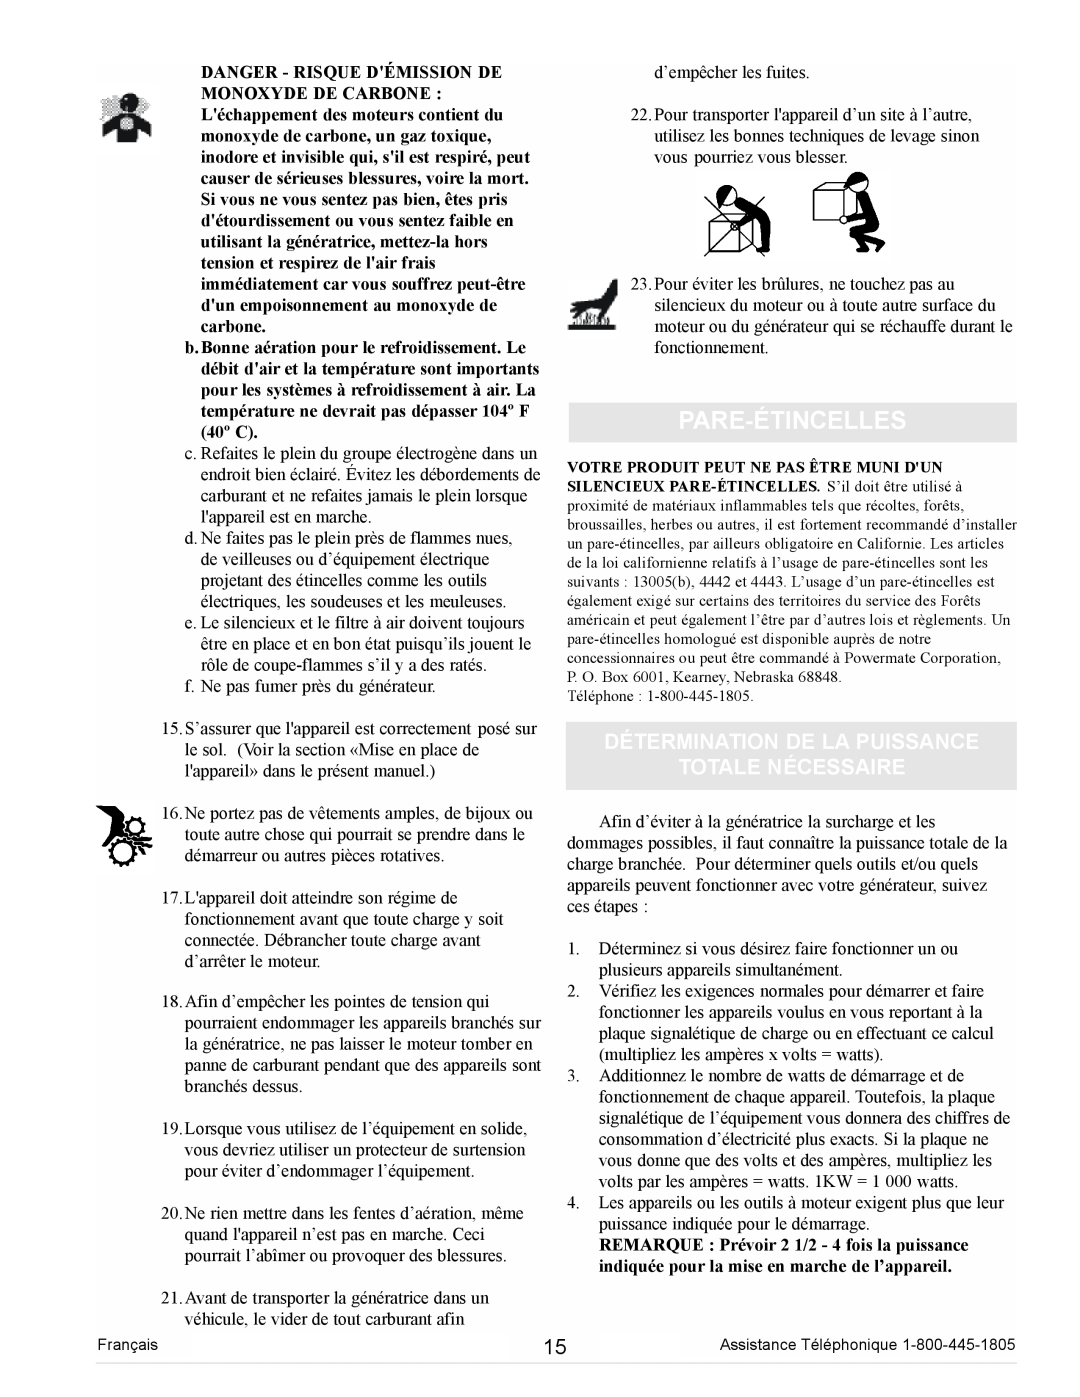 Powermate PM0105000 manual Pare-Étincelles, Détermination De La Puissance Totale Nécessaire 